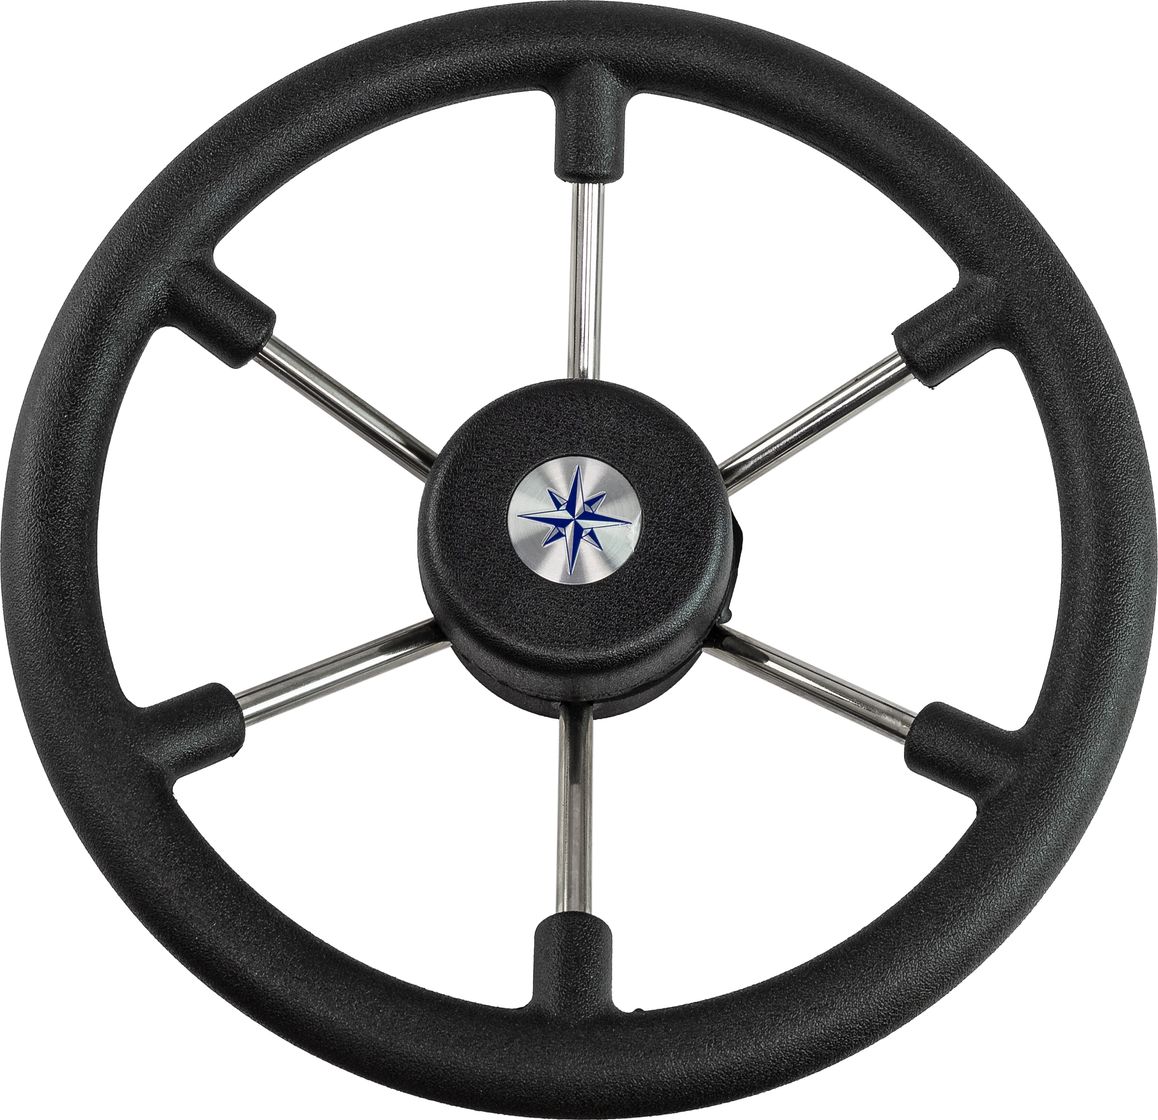 Рулевое колесо LEADER TANEGUM черный обод серебряные спицы д. 330 мм VN7330-01 рулевое колесо leader tanegum белый обод серебряные спицы д 400 мм vn7400 08